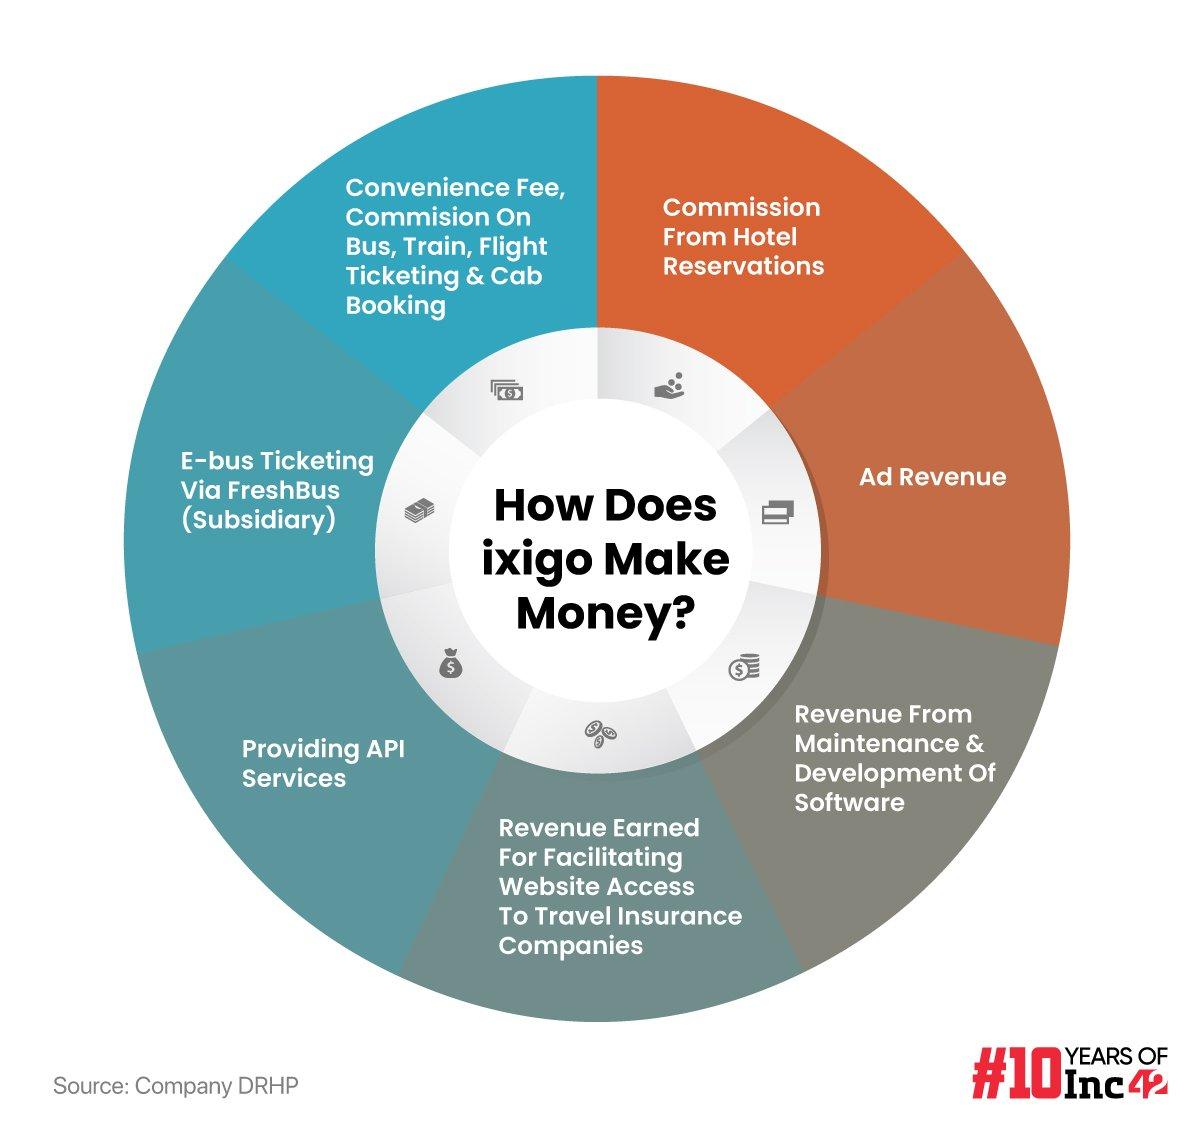 How Does ixigo Make Money?